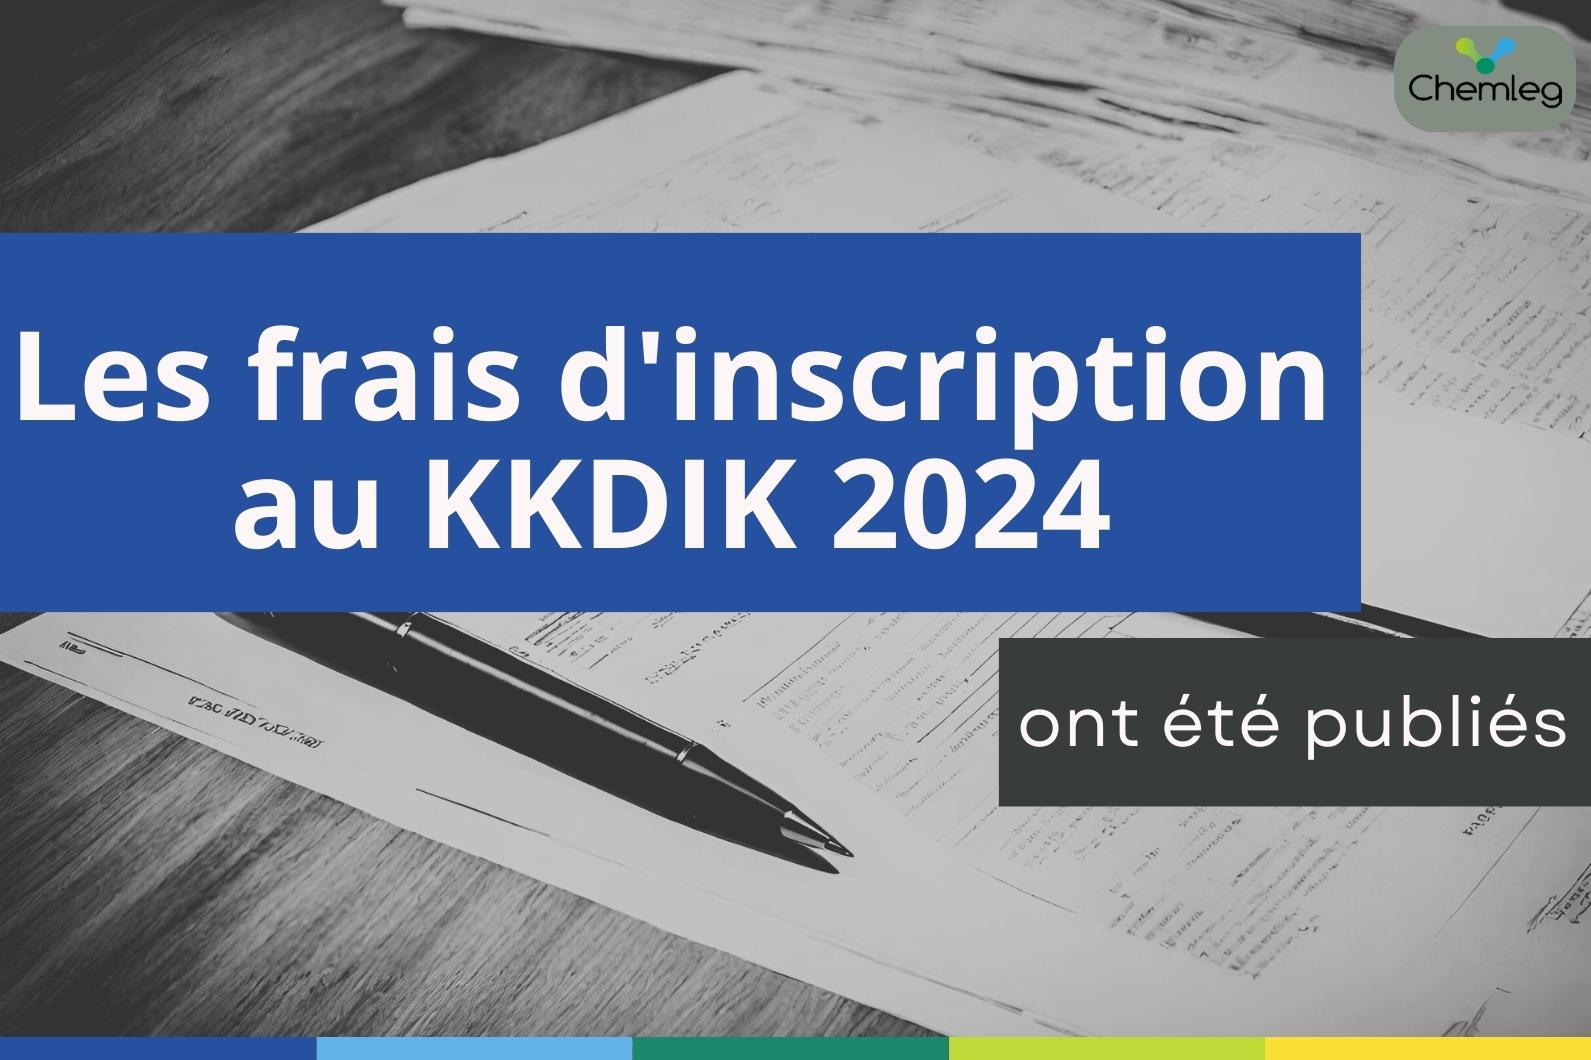 Les frais d'inscription au KKDIK 2024 ont été publiés